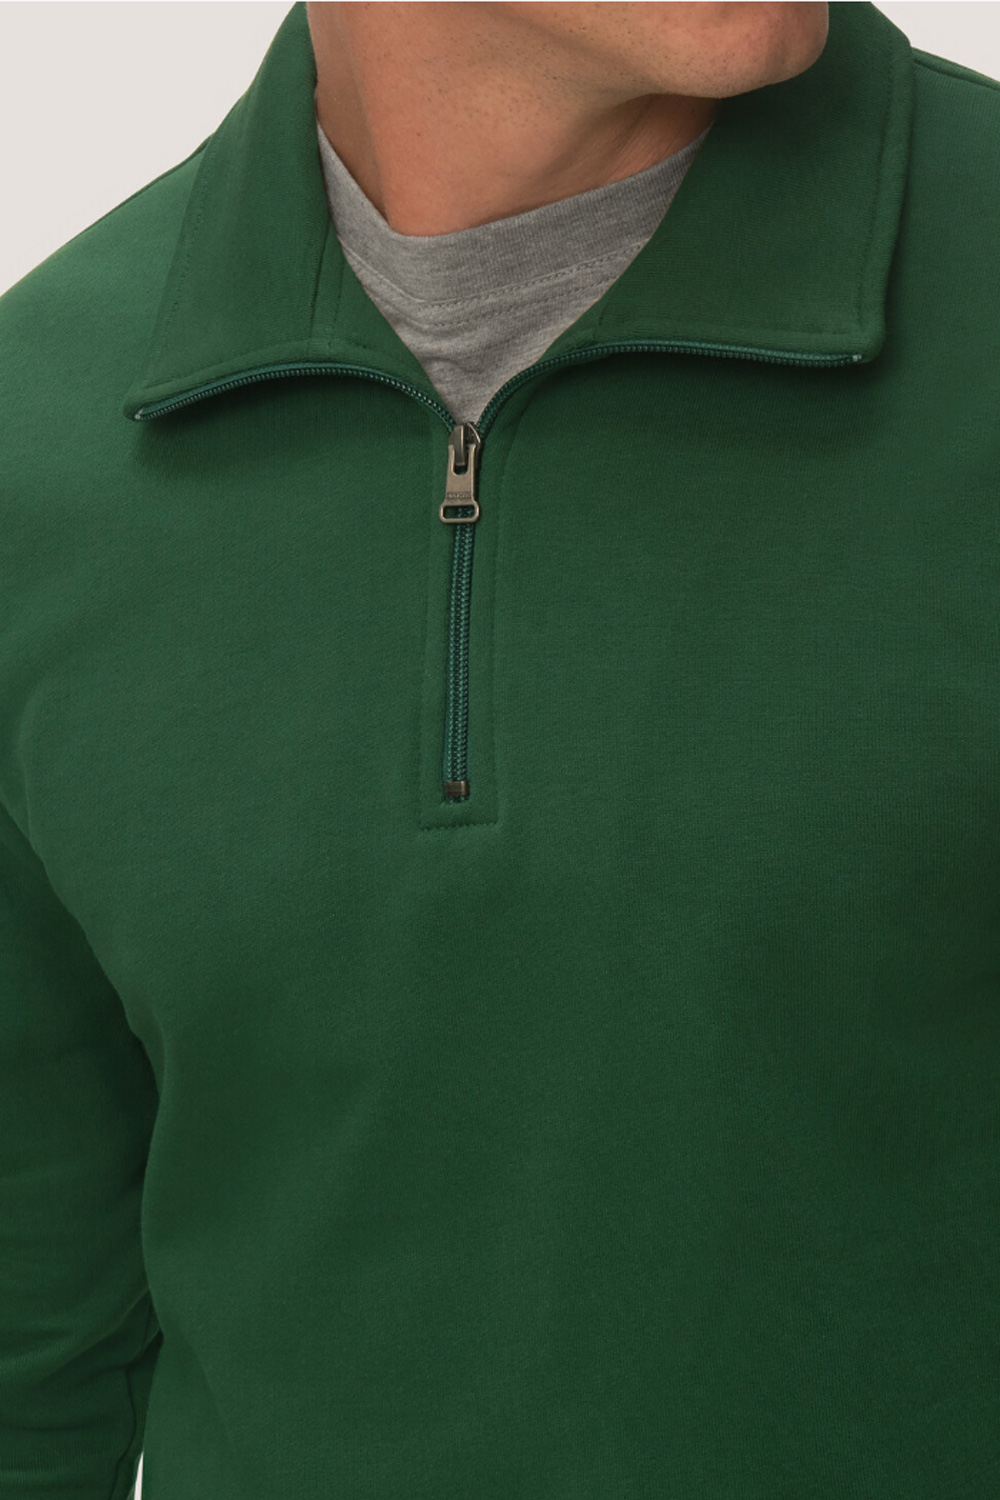 Hakro Zip-Sweatshirt Premium 0451